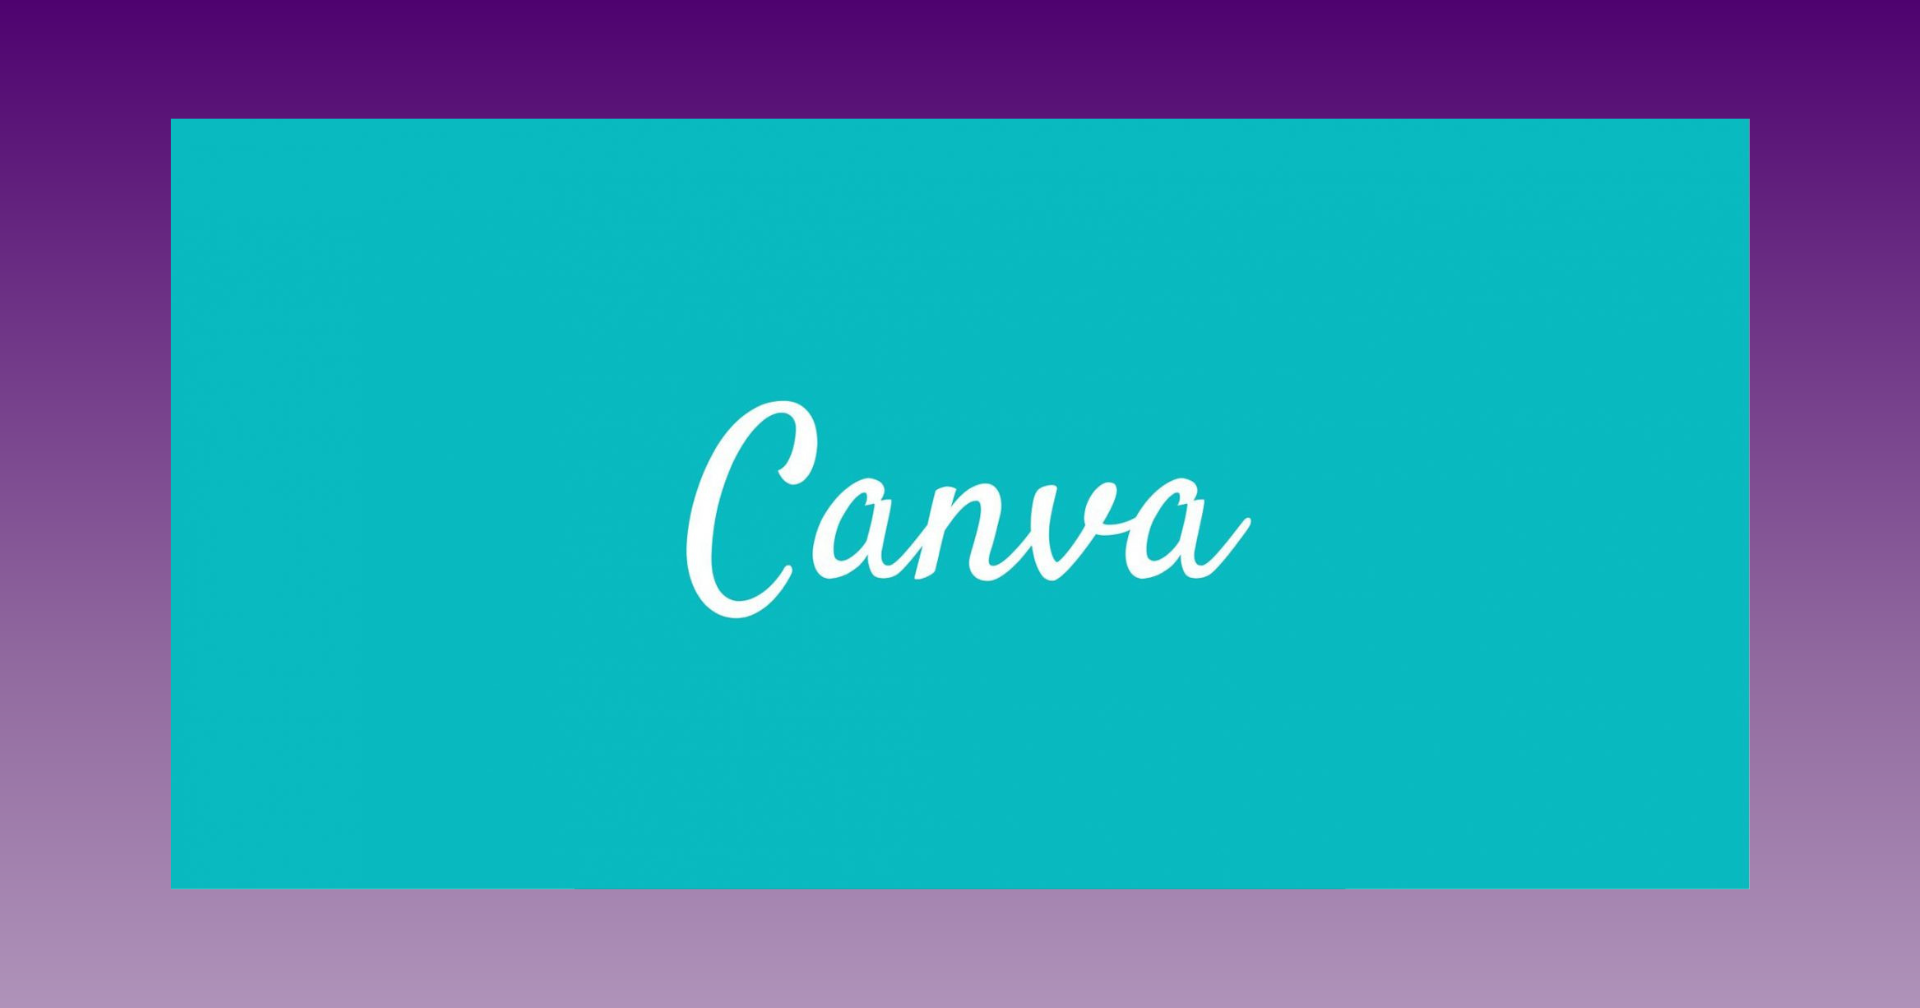 Canva : la plateforme de conception graphique qui répond à toutes vos prières